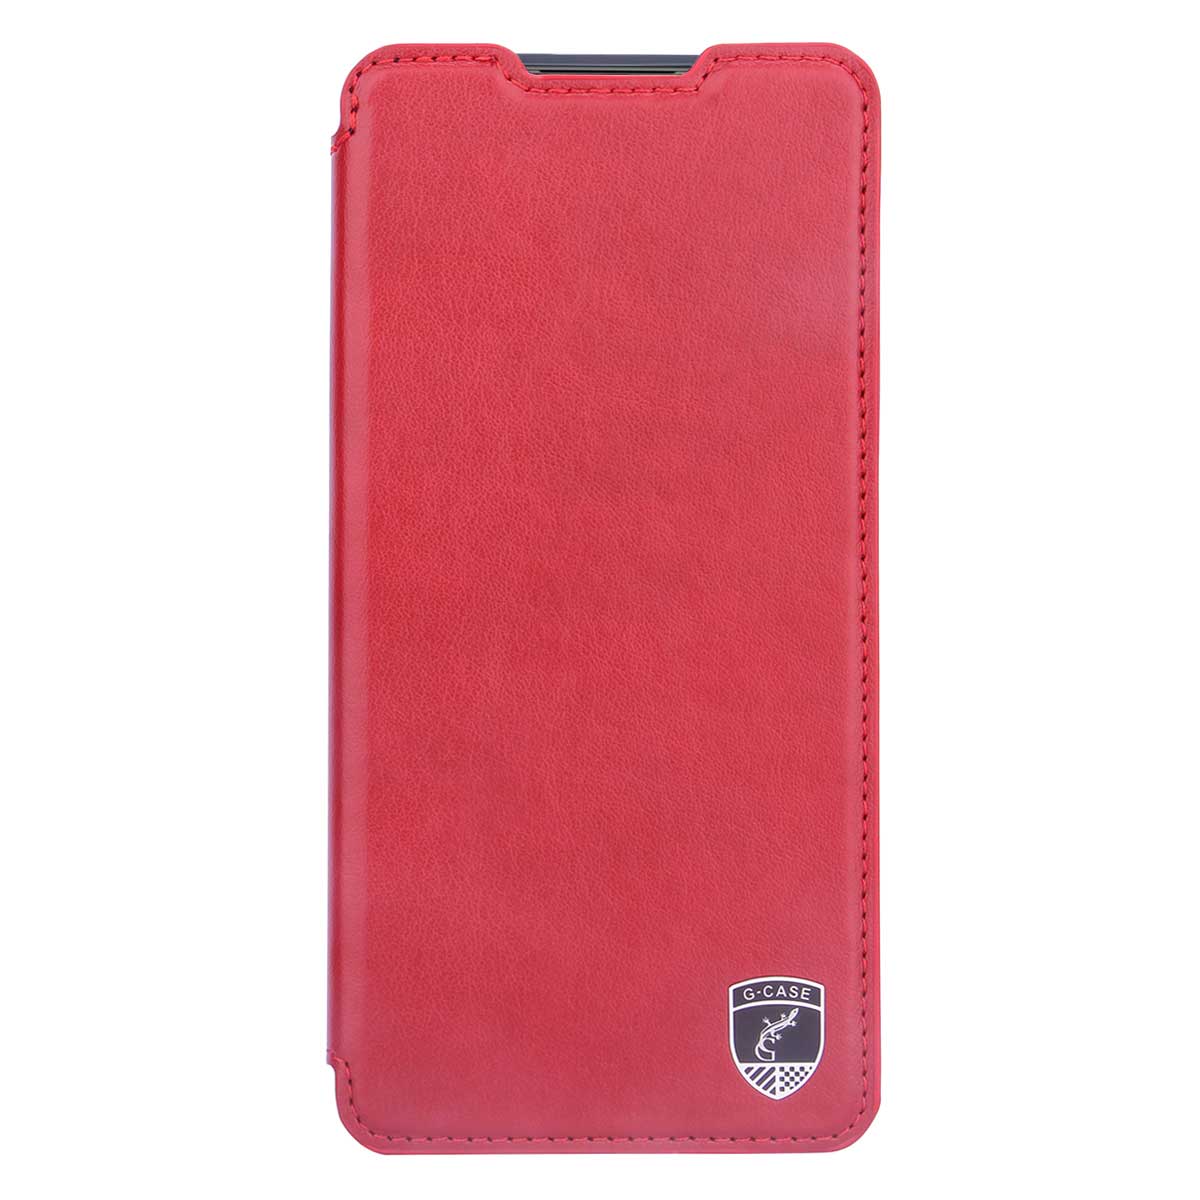 Чехол G-Case для Samsung Galaxy A72 SM-A725F Slim Premium Red GG-1358 цена и фото